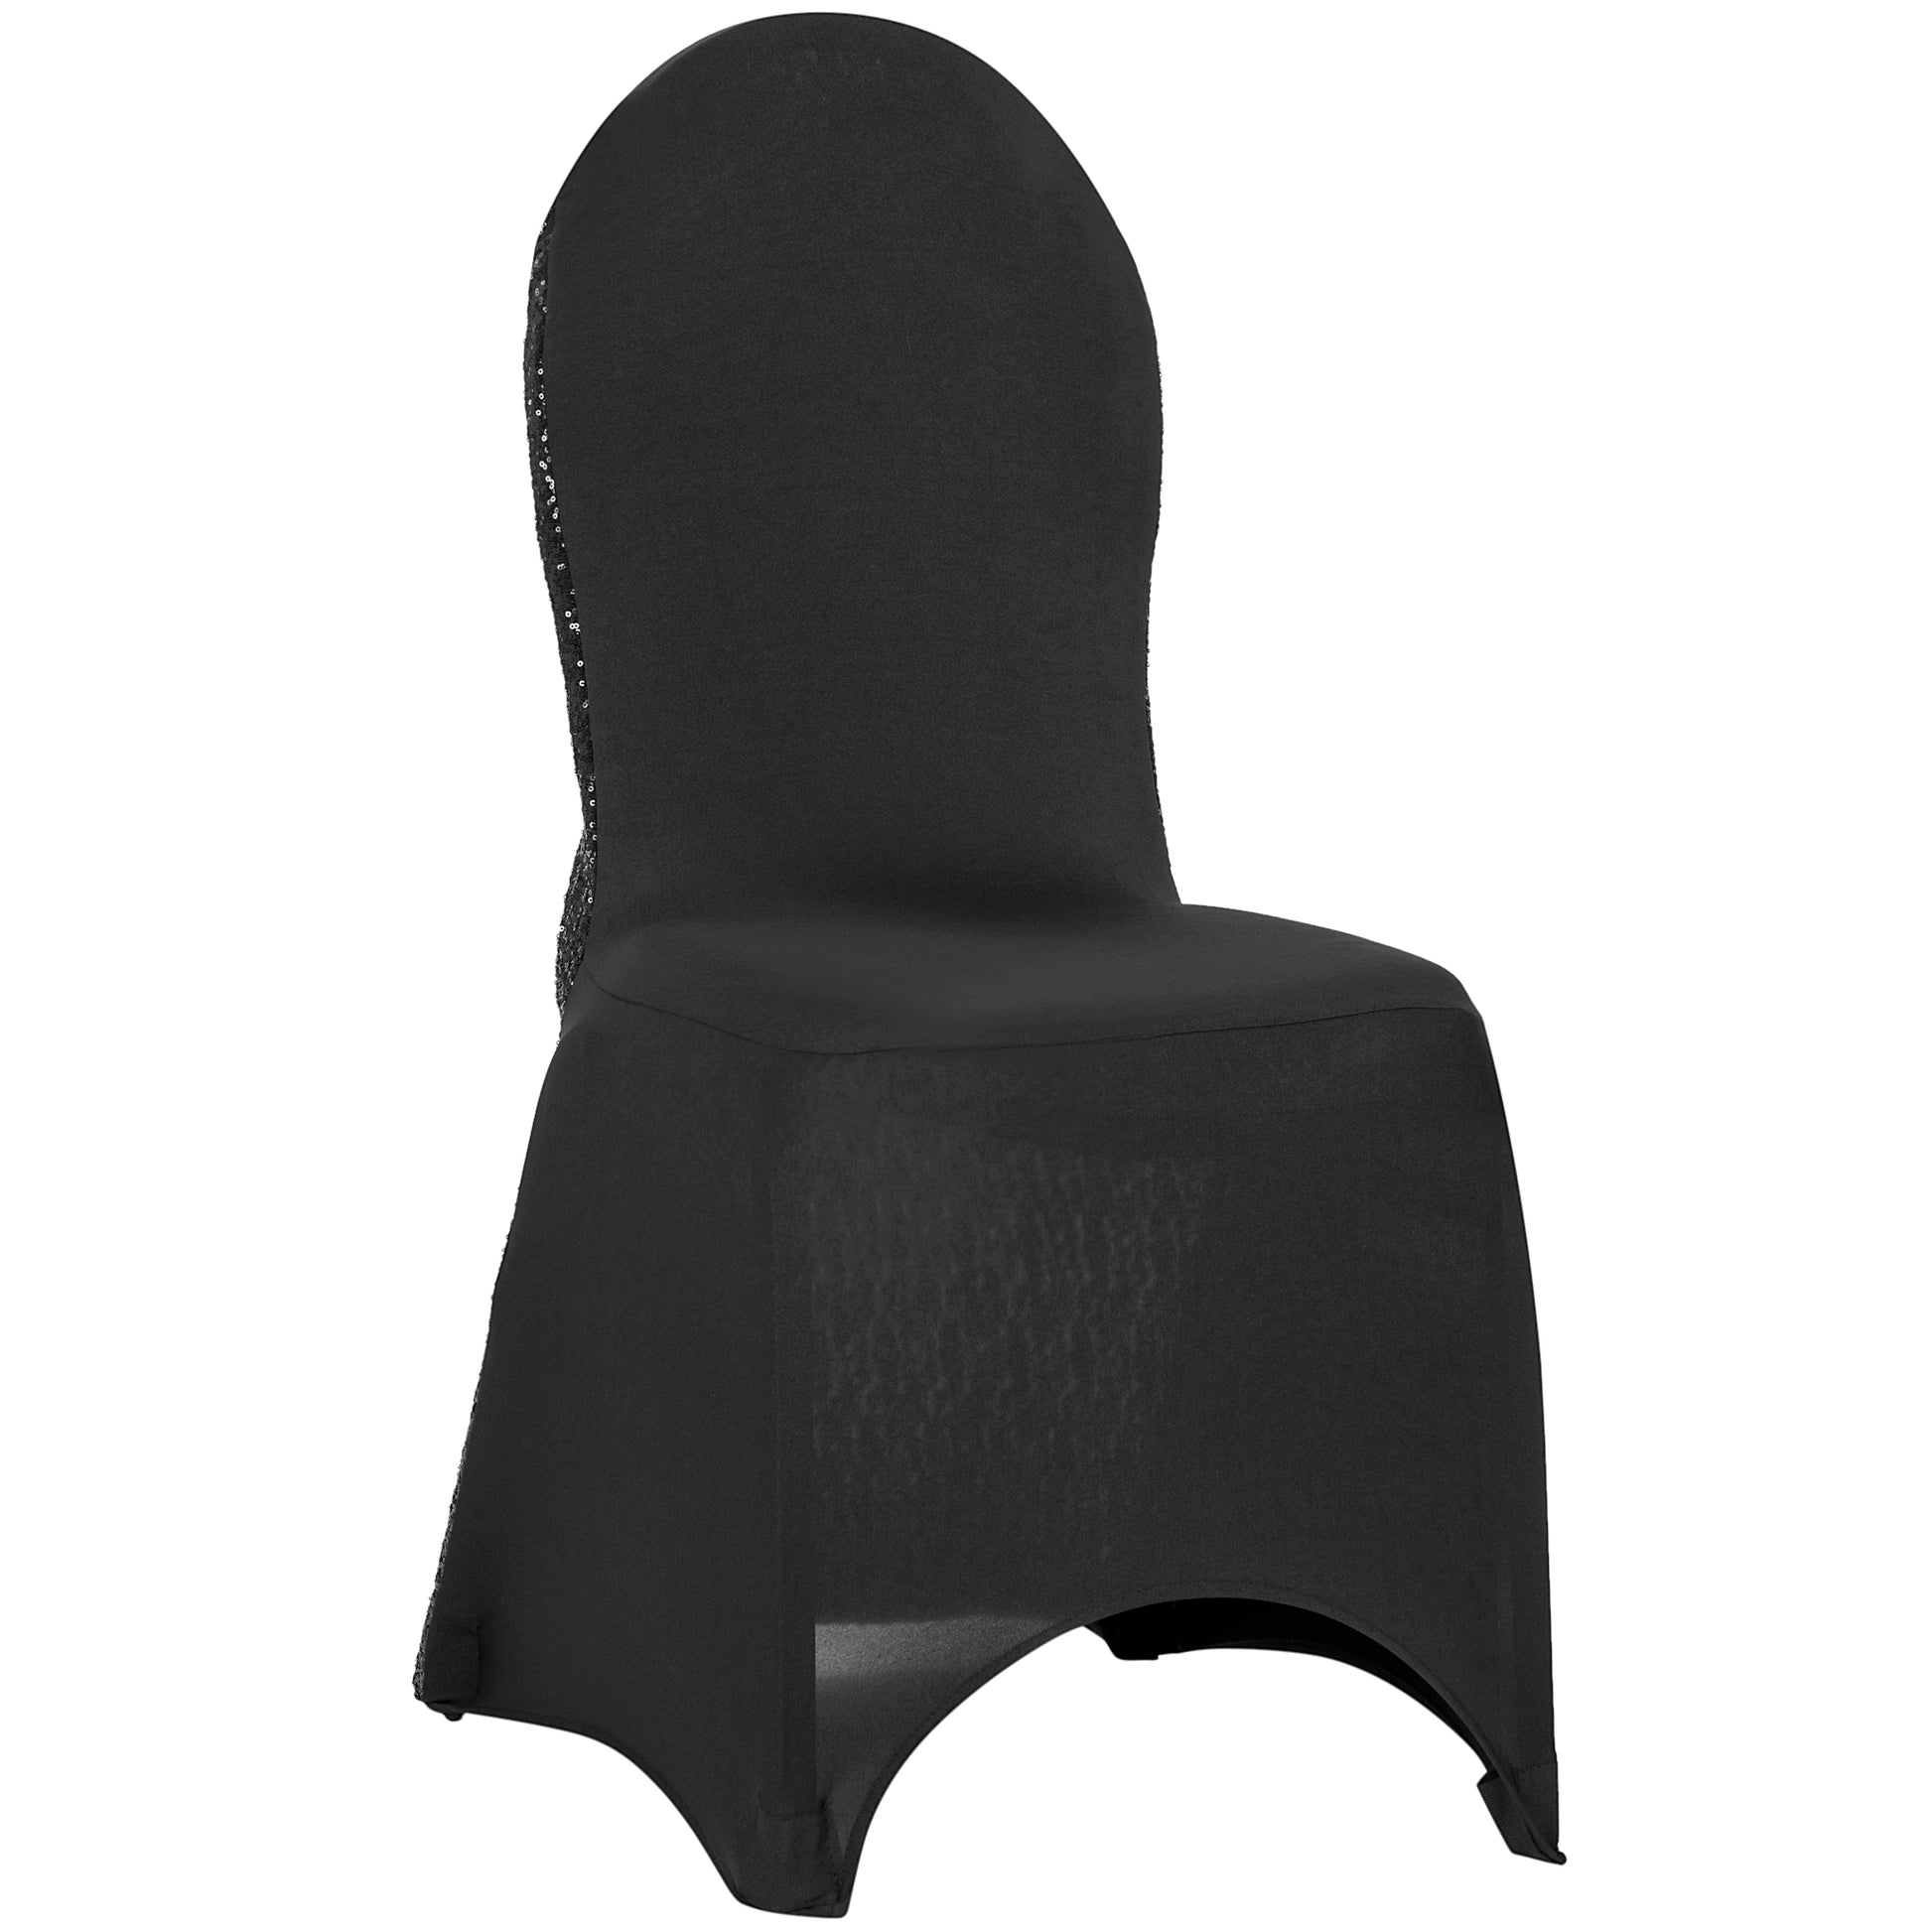 Glitz Sequin Stretch Spandex Banquet Chair Cover - Black - CV Linens